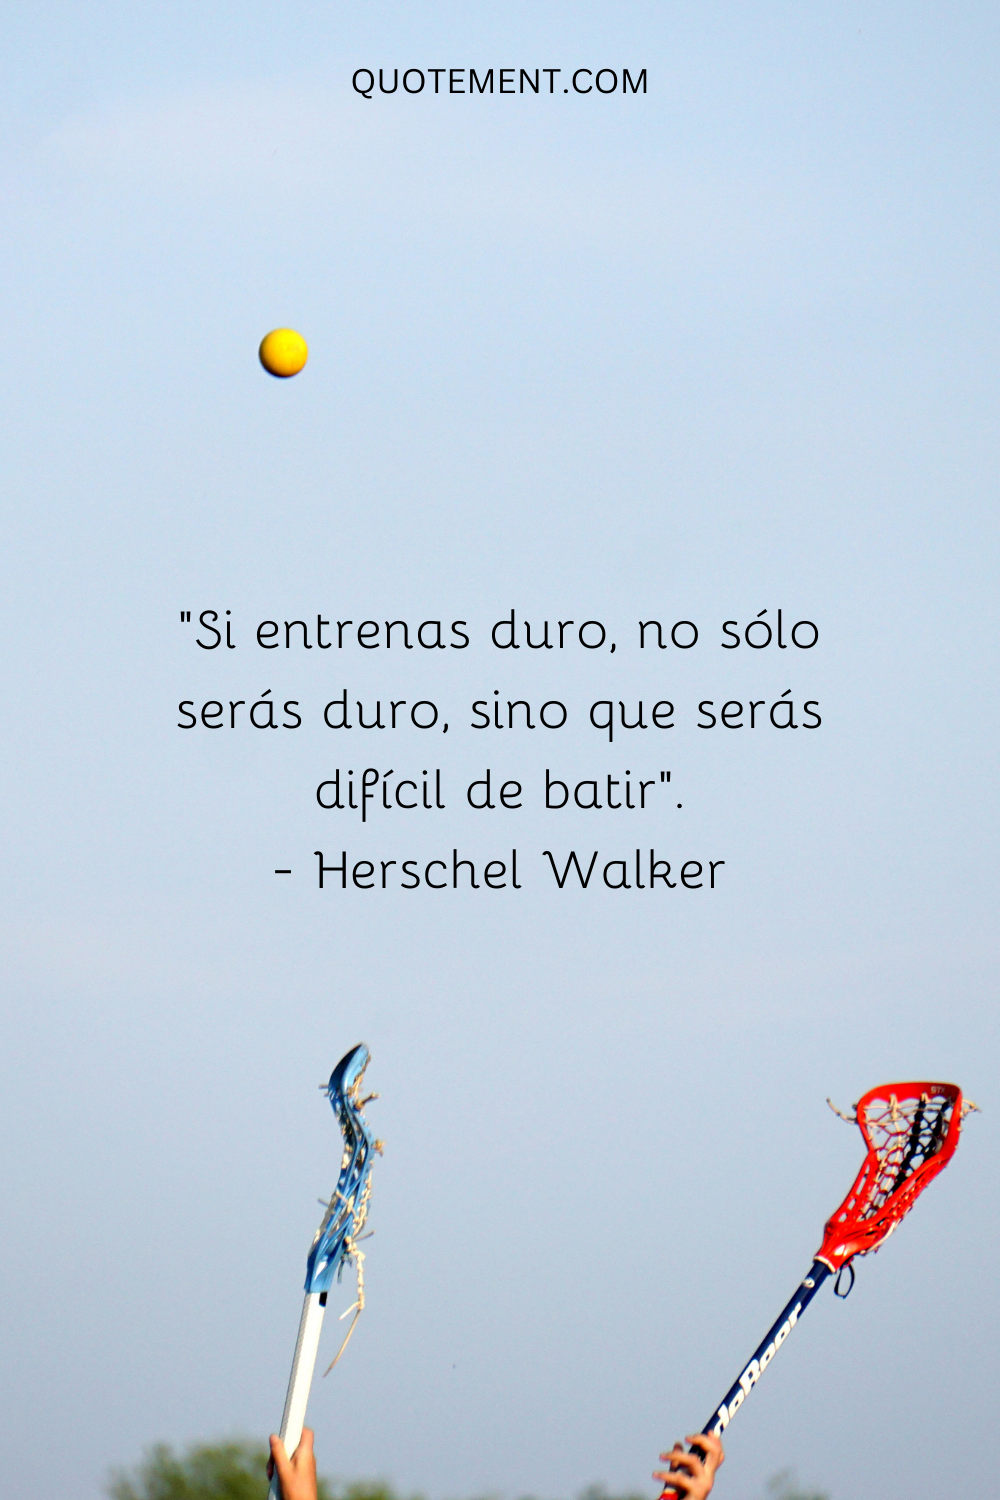 "Si entrenas duro, no sólo serás duro, sino que serás difícil de batir". - Herschel Walker